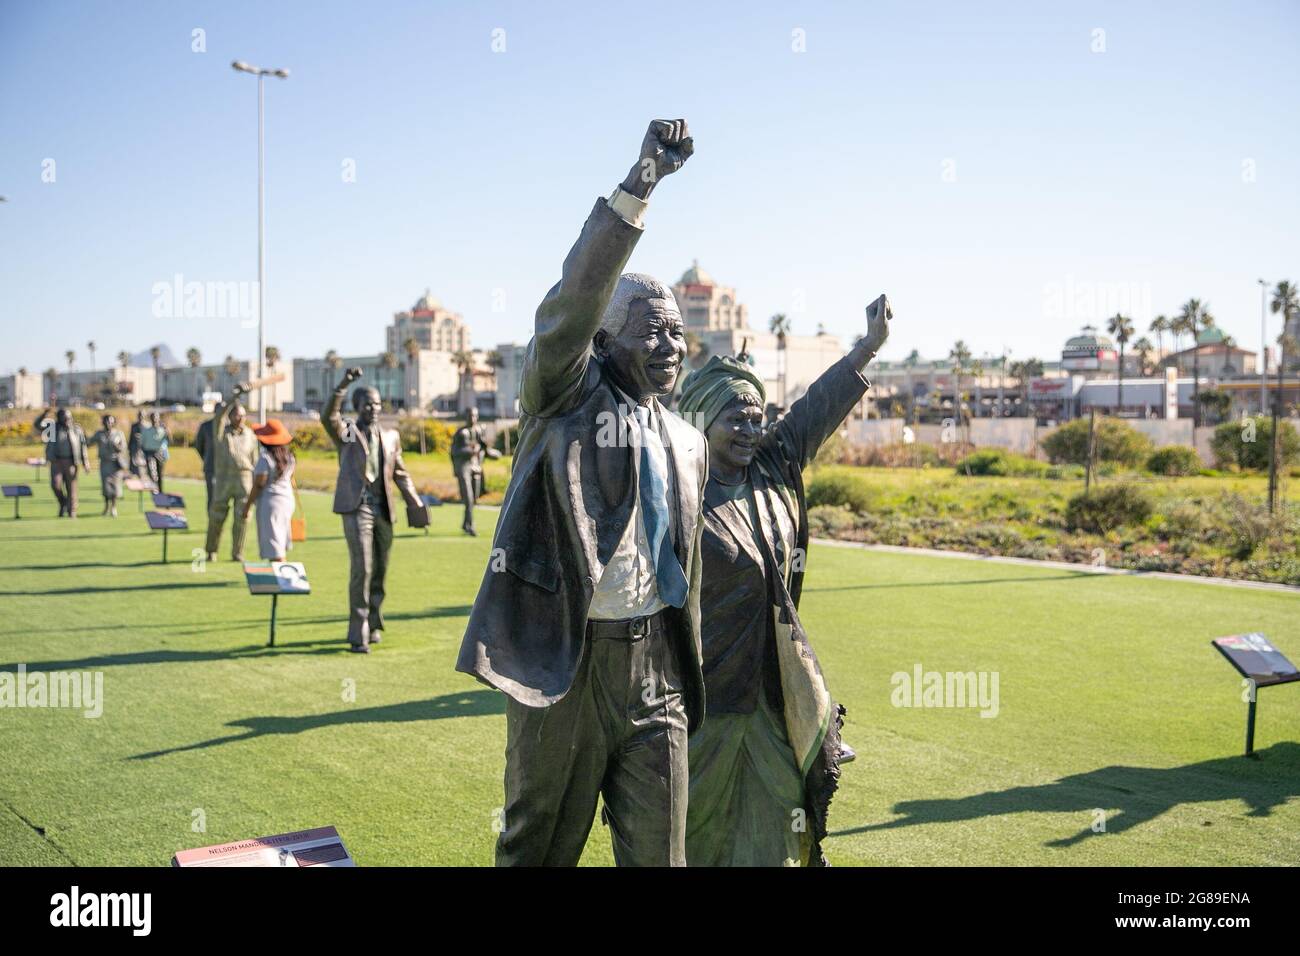 Città del Capo, Sud Africa. 18 luglio 2021. Statue di bronzo di Nelson Mandela e di sua moglie Winnie Madikizela-Mandela sono esposte in un luogo turistico a Città del Capo, Sud Africa, 18 luglio 2021. Nel novembre 2009, l'Assemblea generale dell'ONU ha dichiarato il 18 luglio, il compleanno di Mandela, come "Nelson Mandela International Day" in riconoscimento dei contributi dell'ex presidente sudafricano alla pace e alla libertà. Credit: LYU Tianran/Xinhua/Alamy Live News Foto Stock